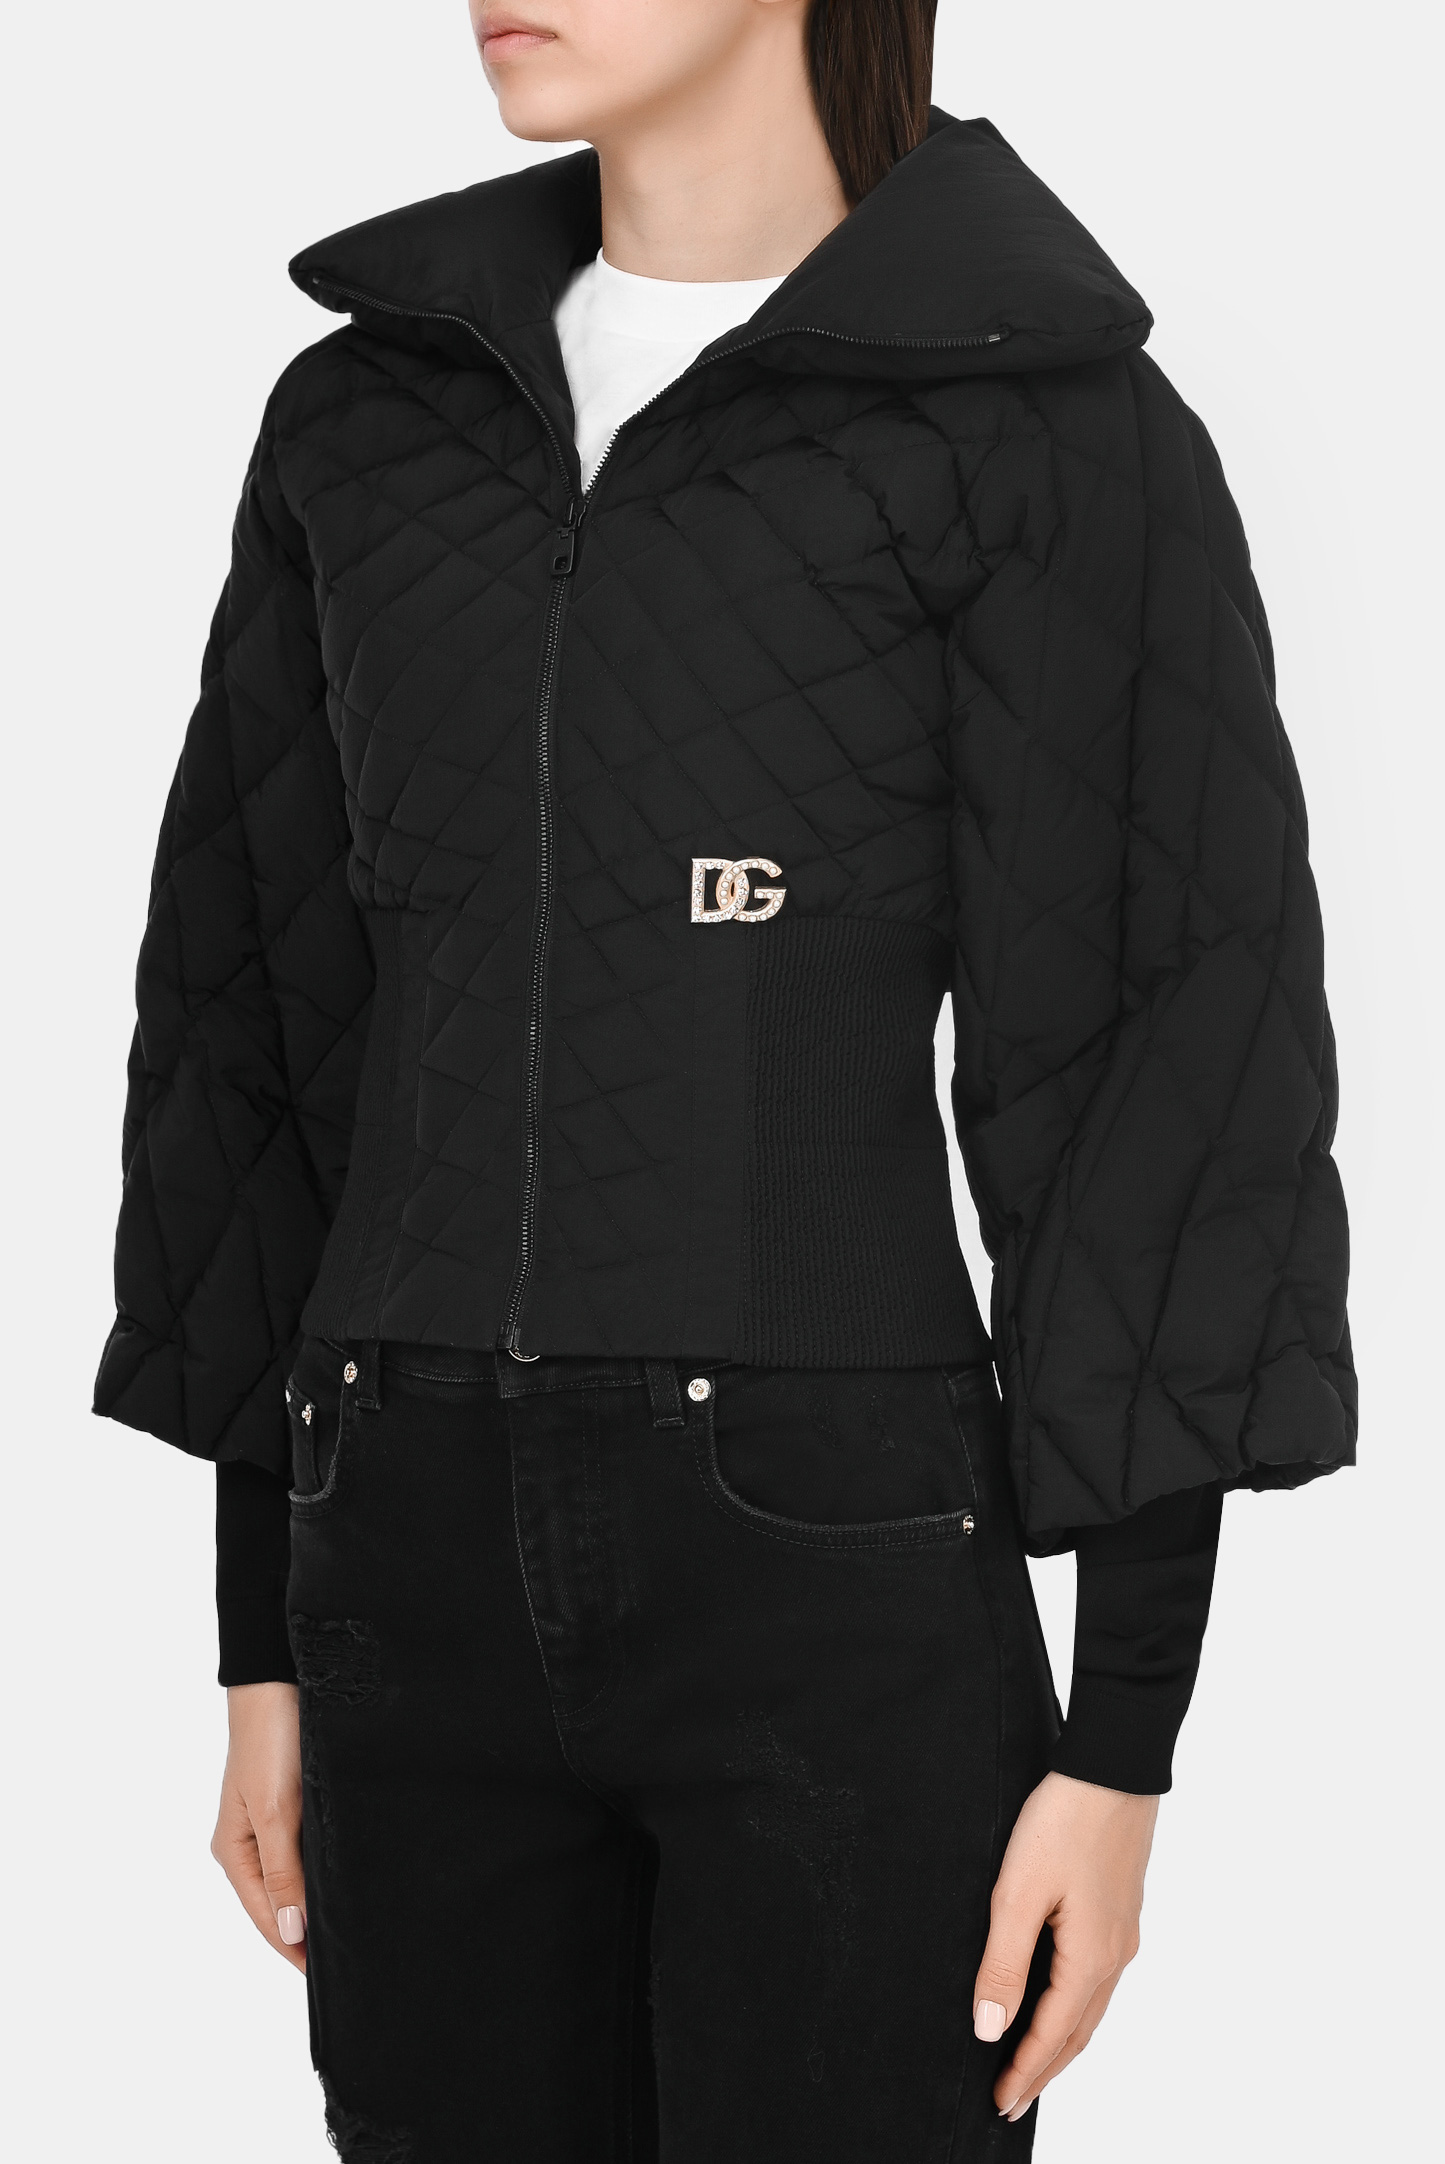 Куртка DOLCE & GABBANA F9J21Z G7YZV, цвет: Черный, Женский